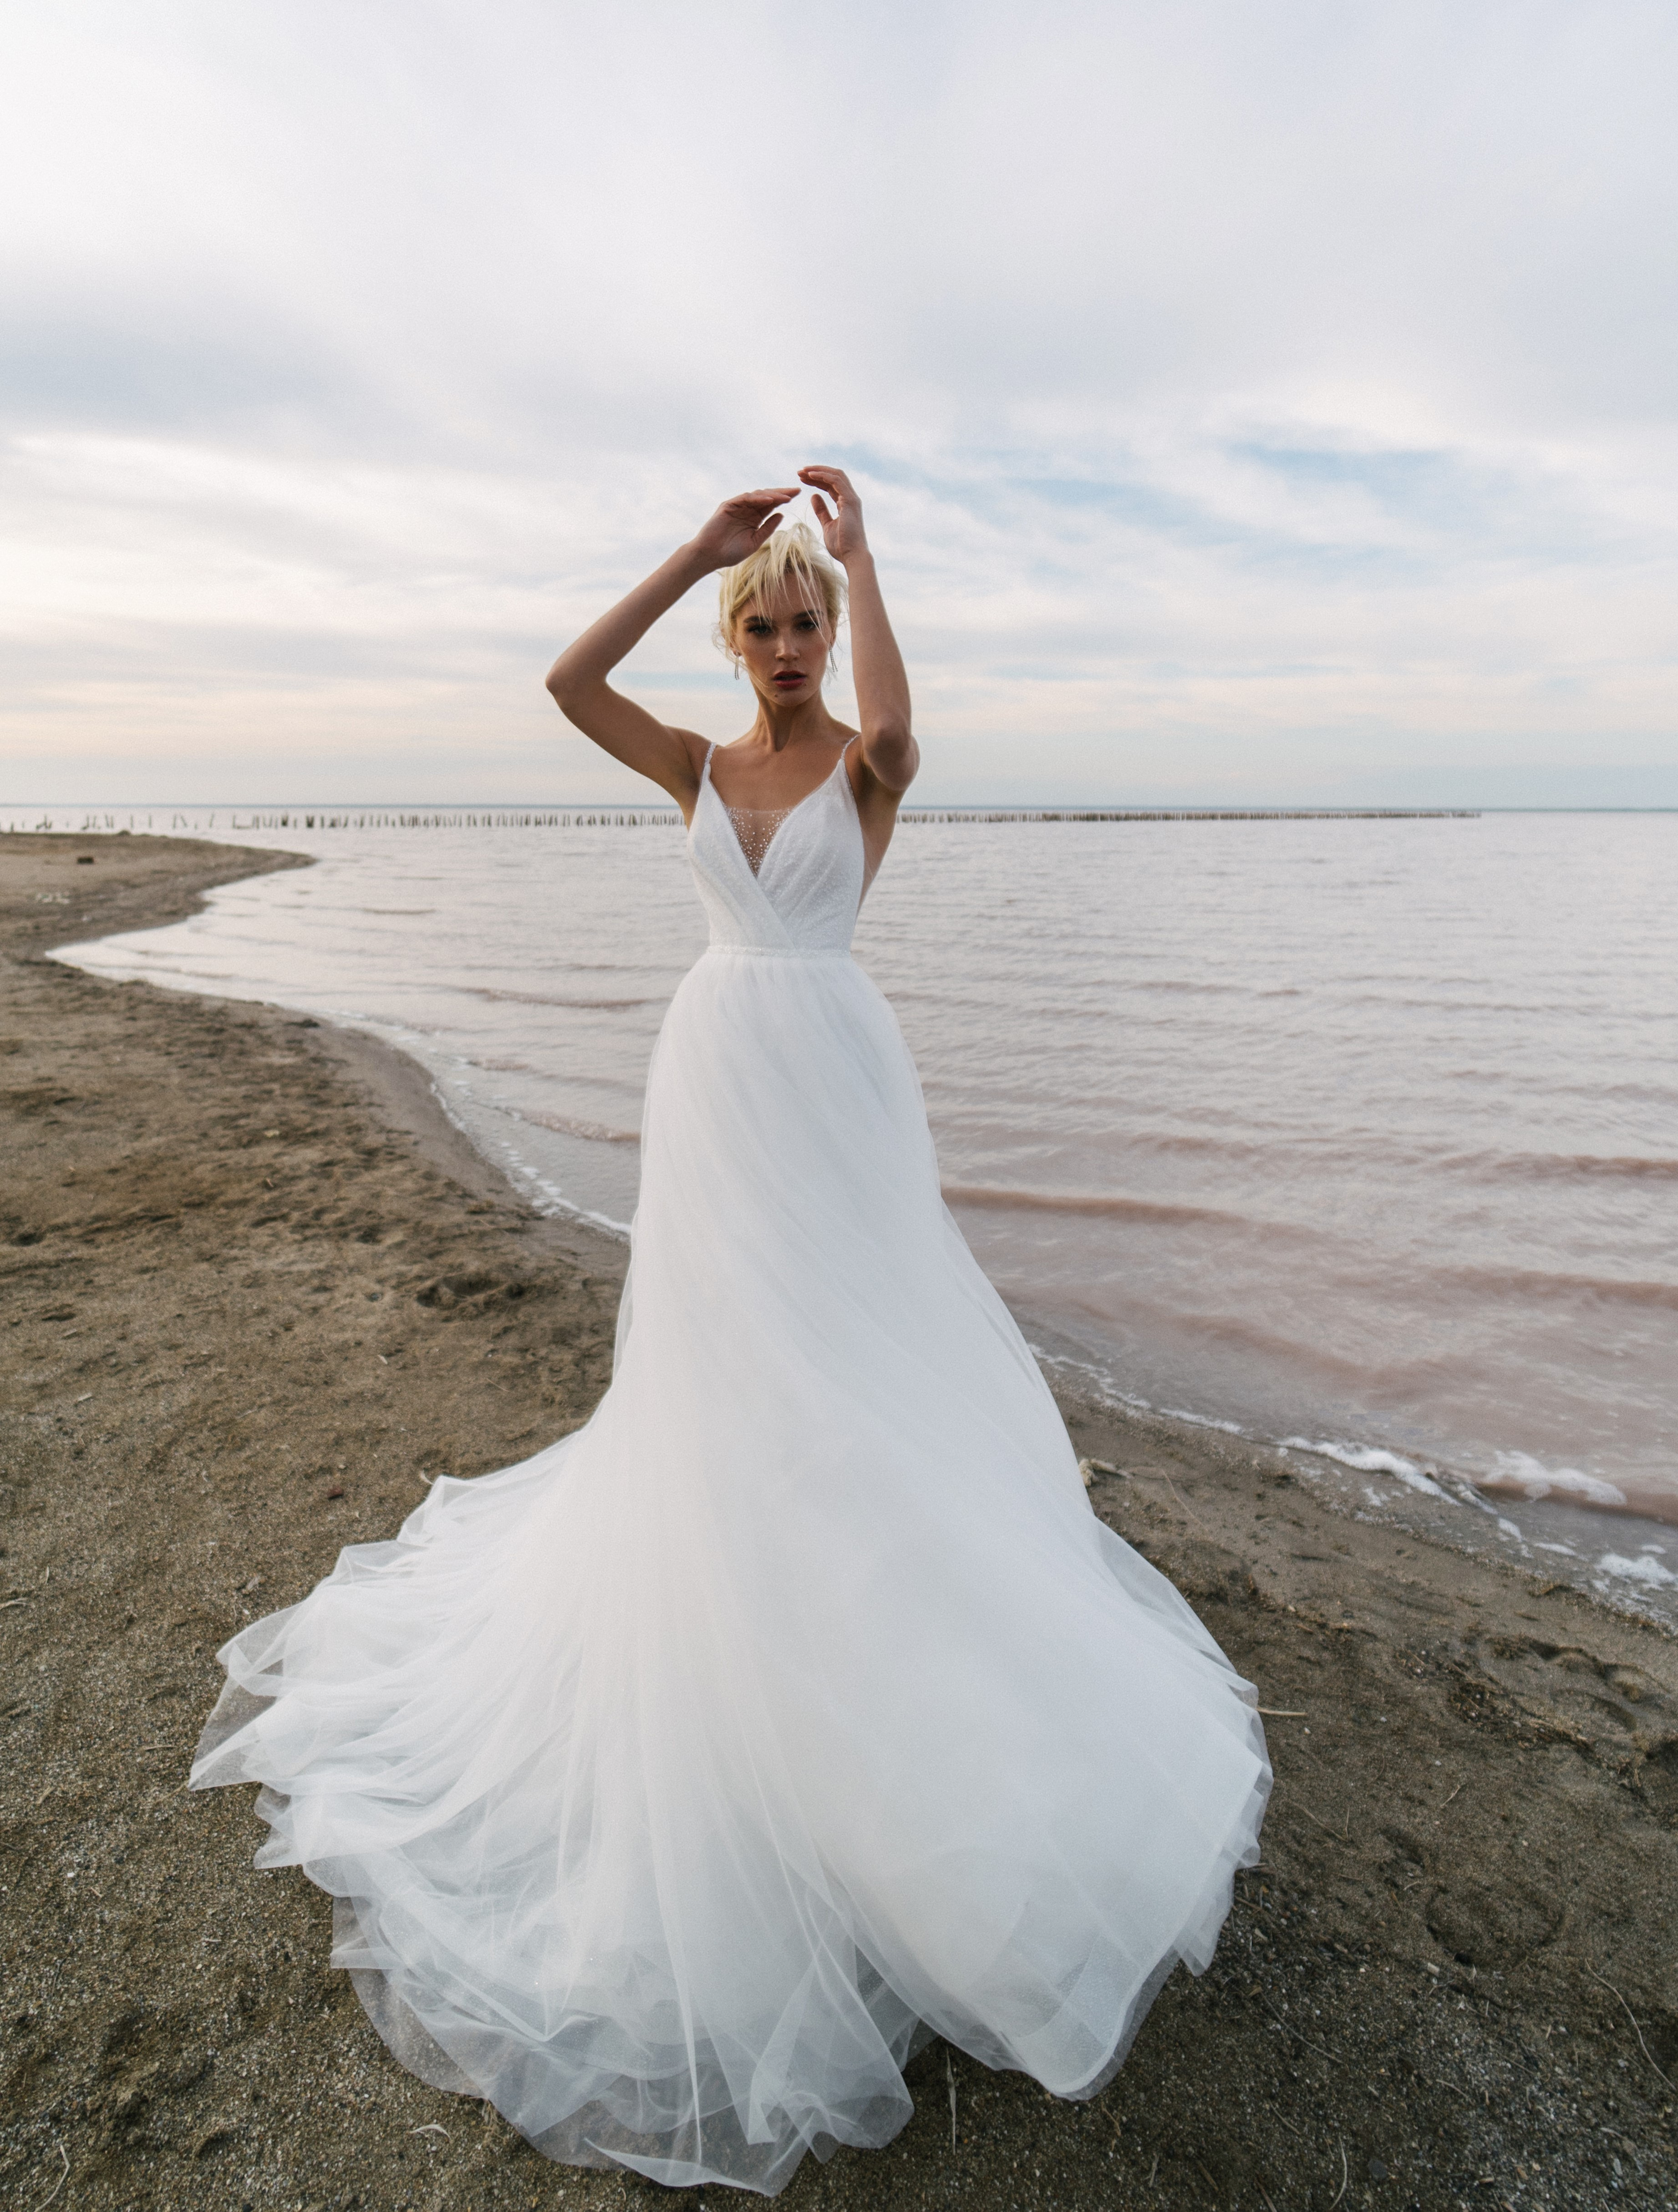 Купить свадебное платье «Людвин» Наталья Романова из коллекции Блаш 2022 года в салоне «Мэри Трюфель»